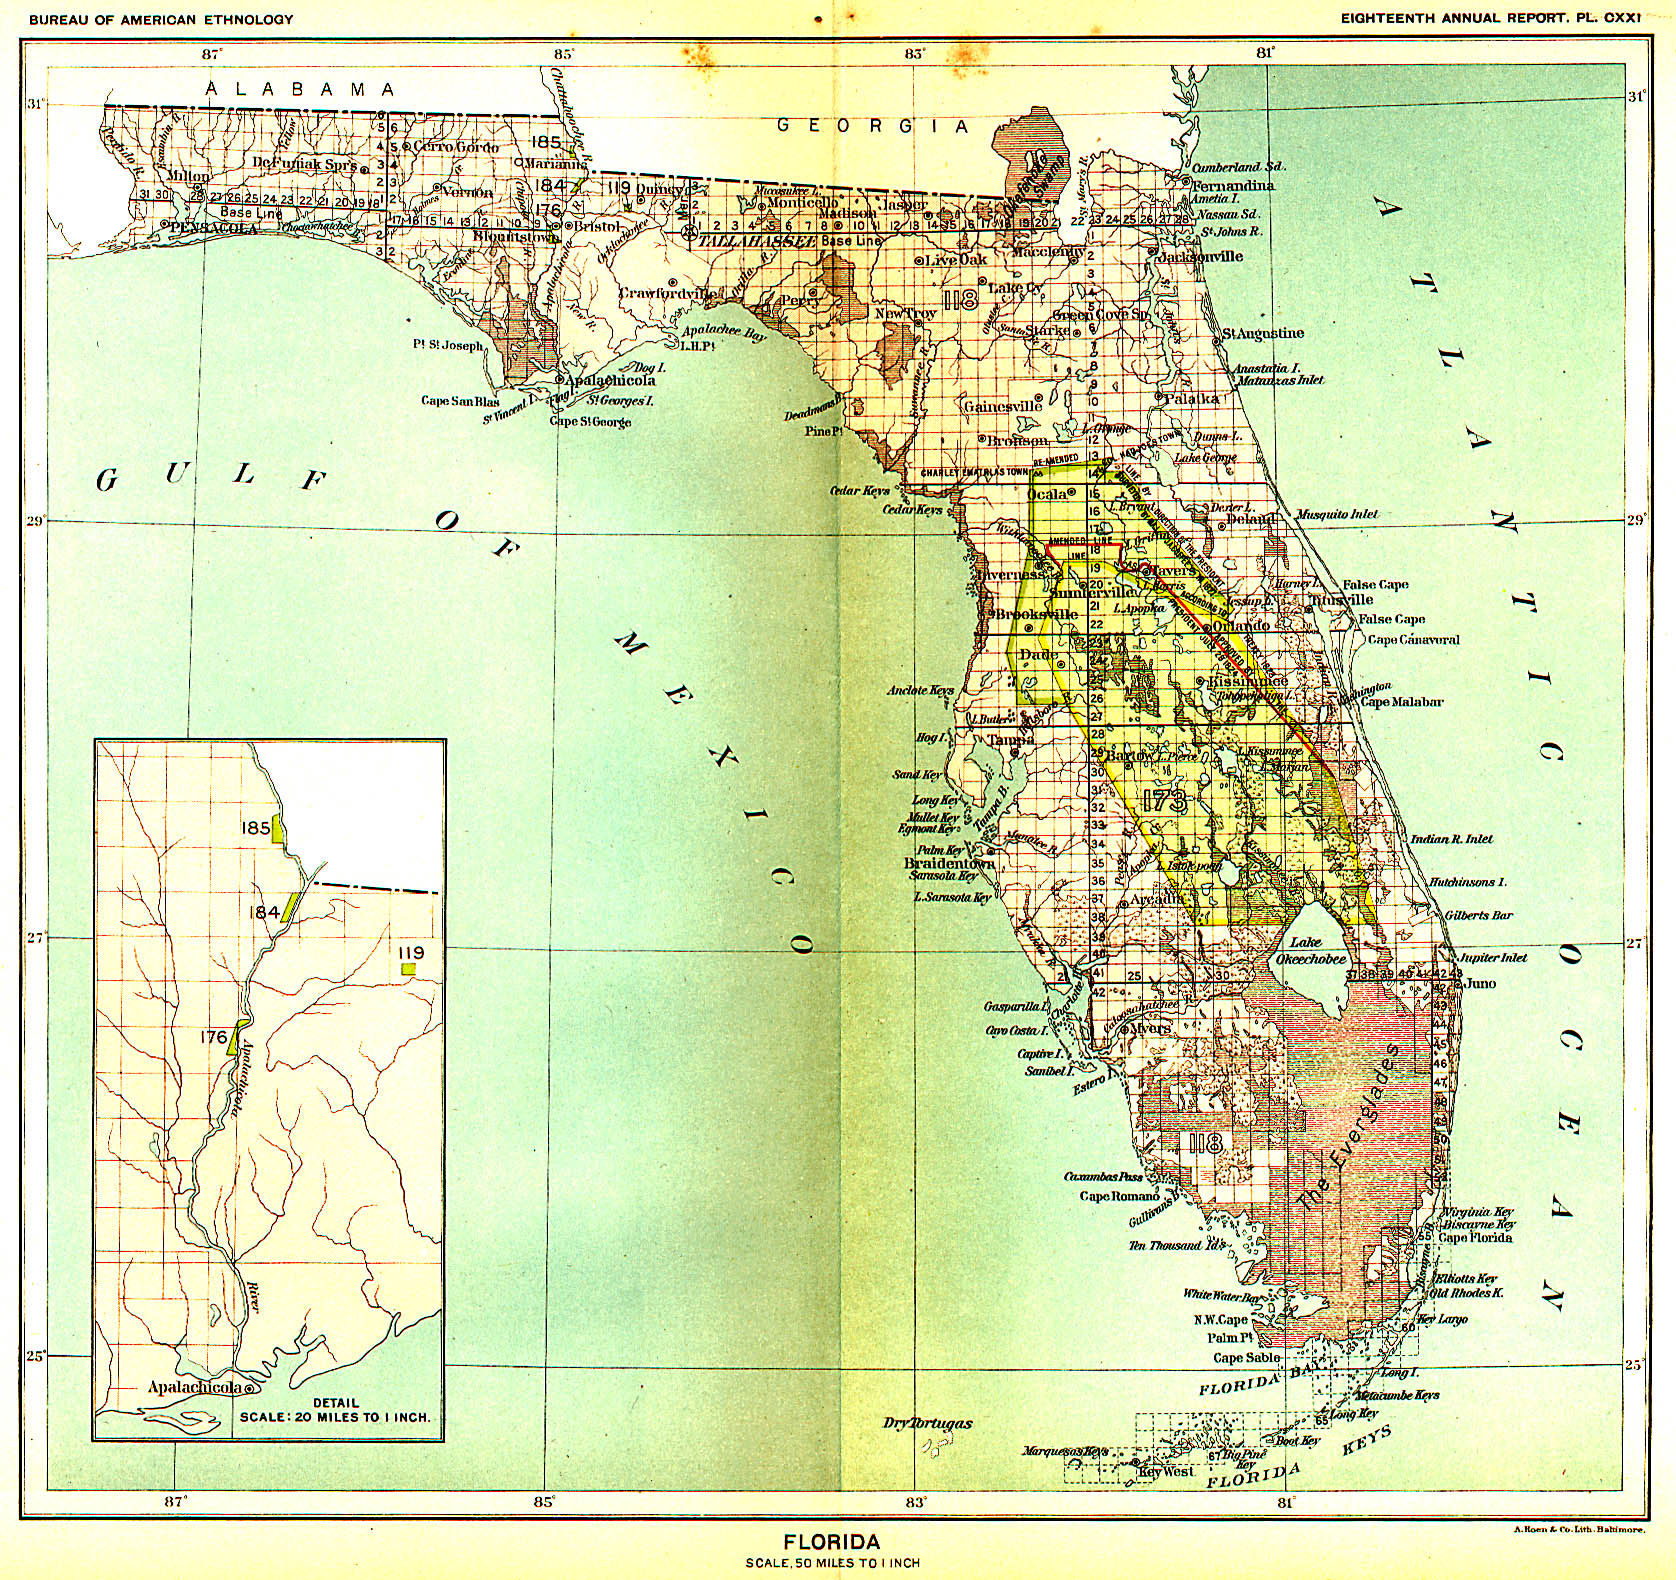 Florida, Map 14